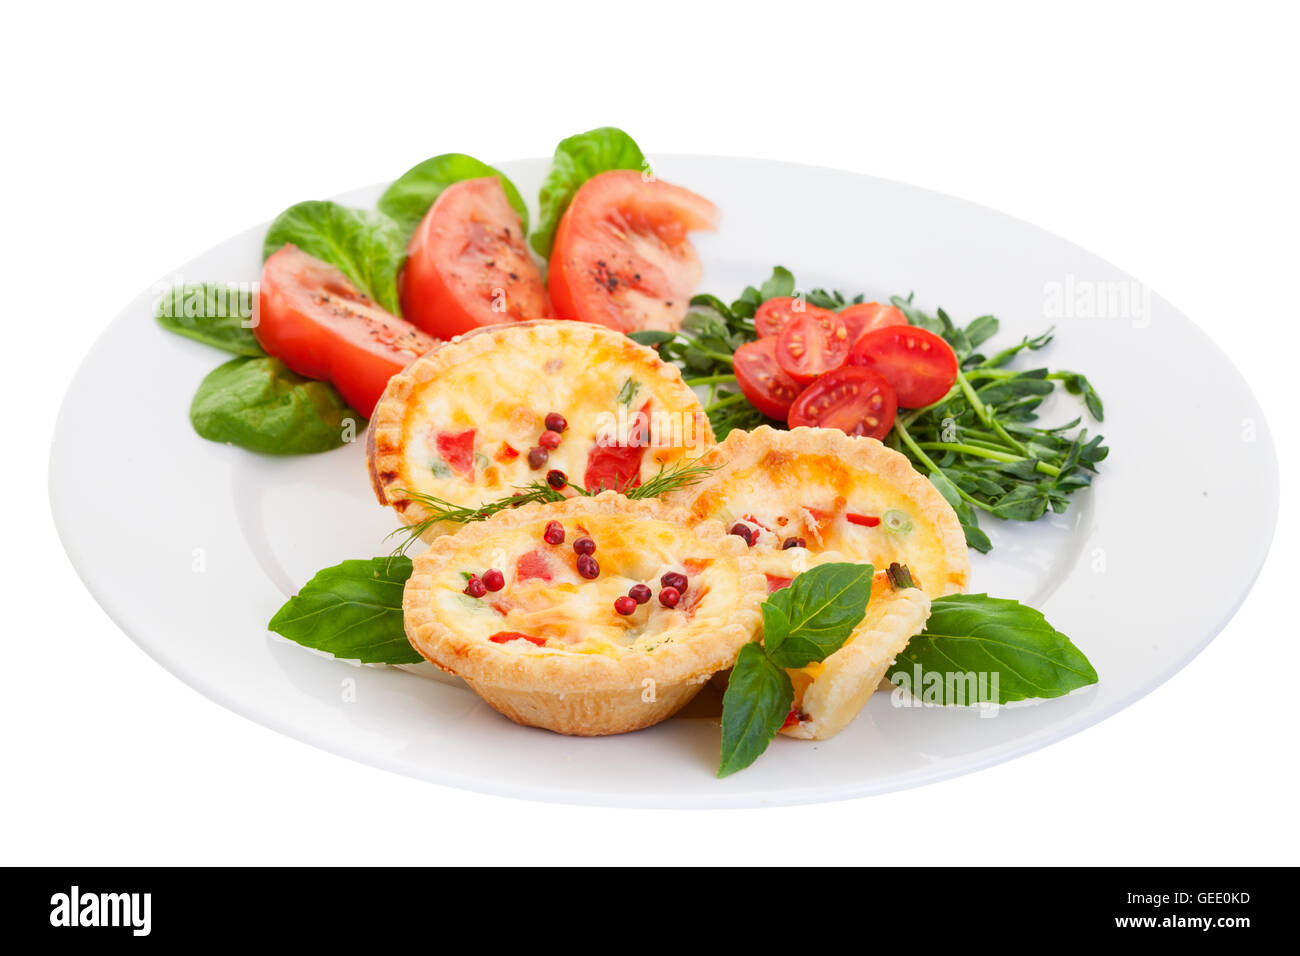 Assiette de Mini quiche sur fond blanc remplie de légumes avec salade.Focus sur la face avant des tartes. Banque D'Images